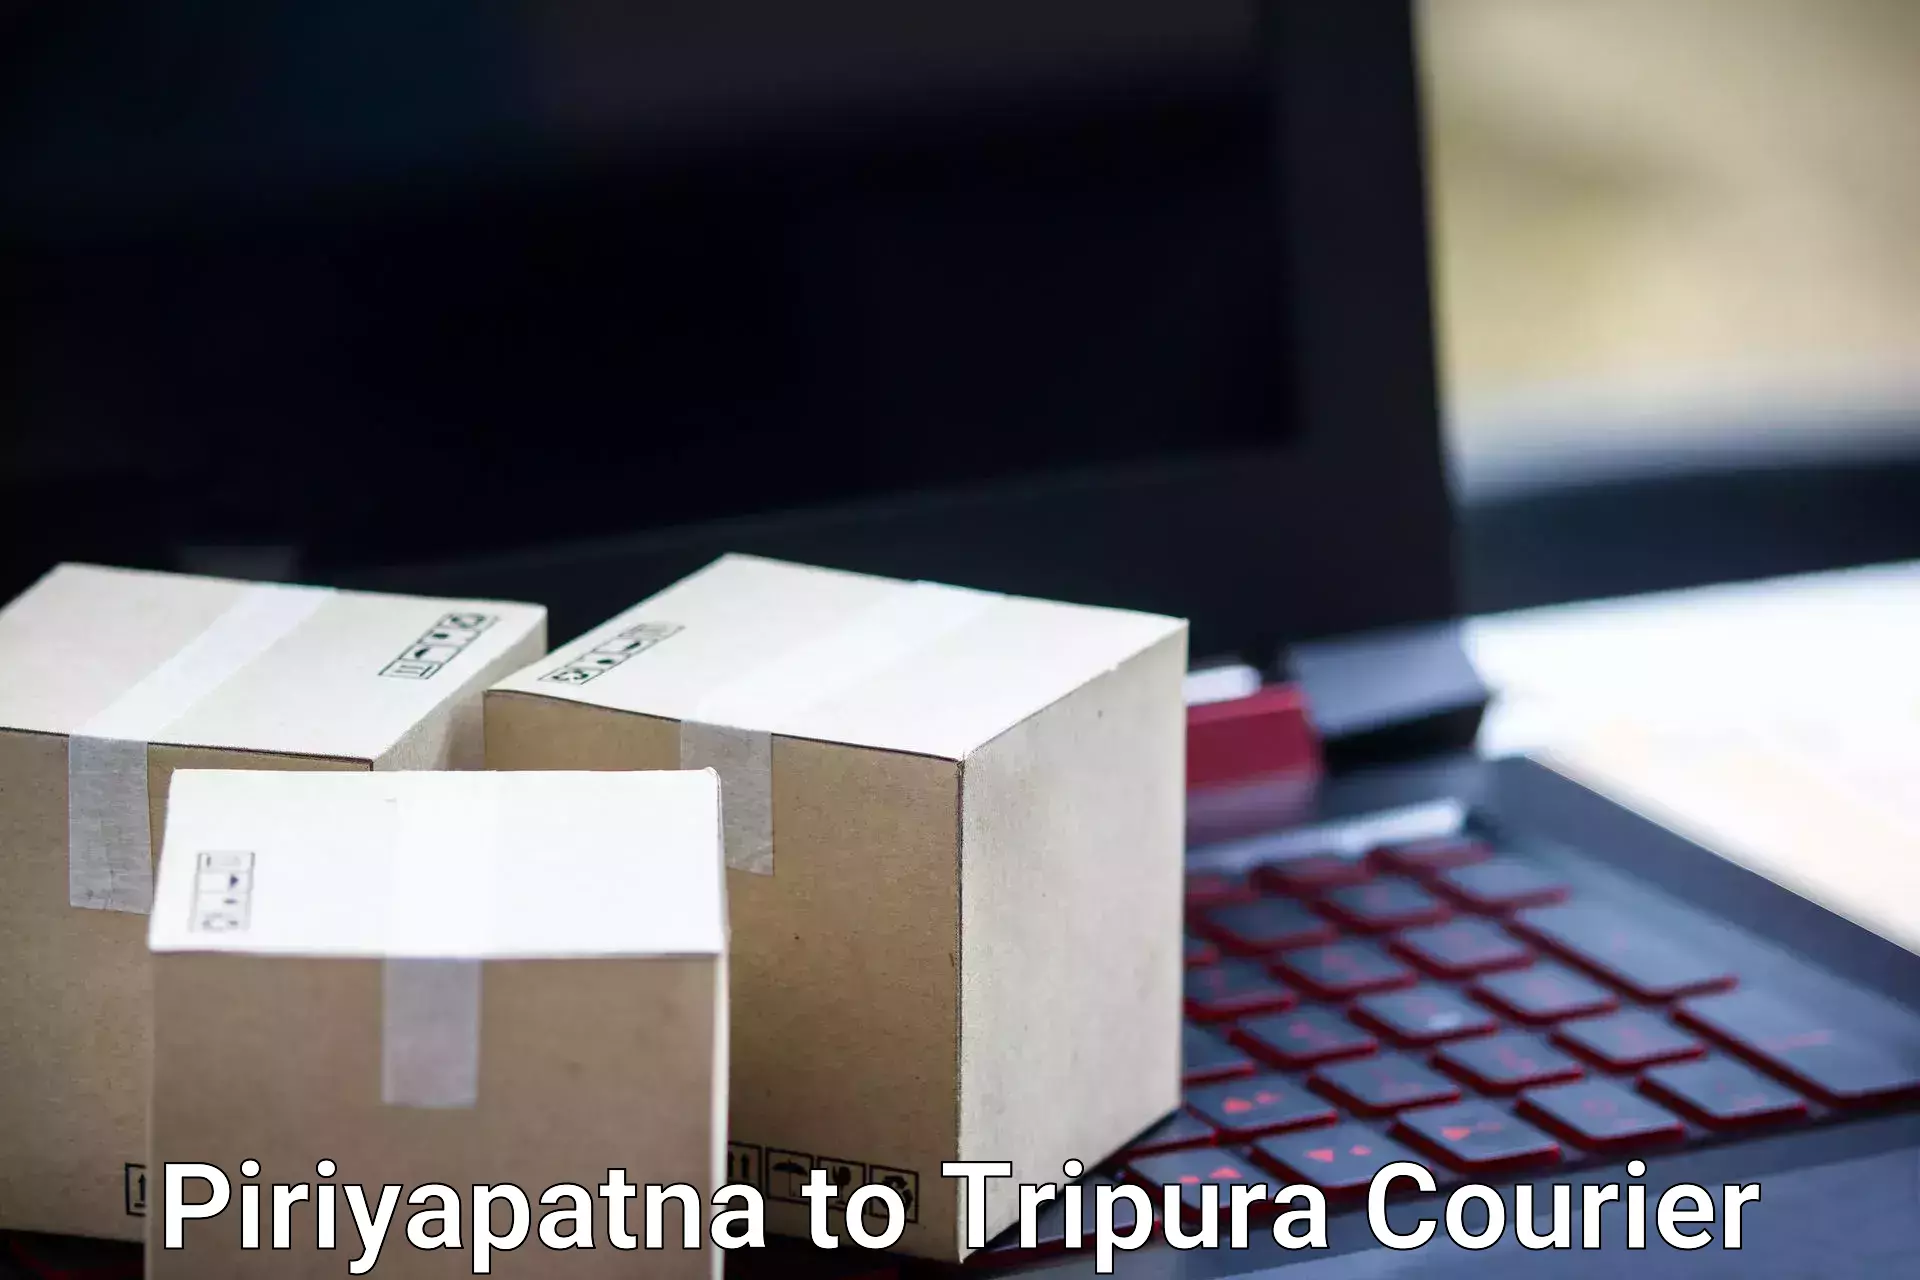 Baggage transport services Piriyapatna to Tripura